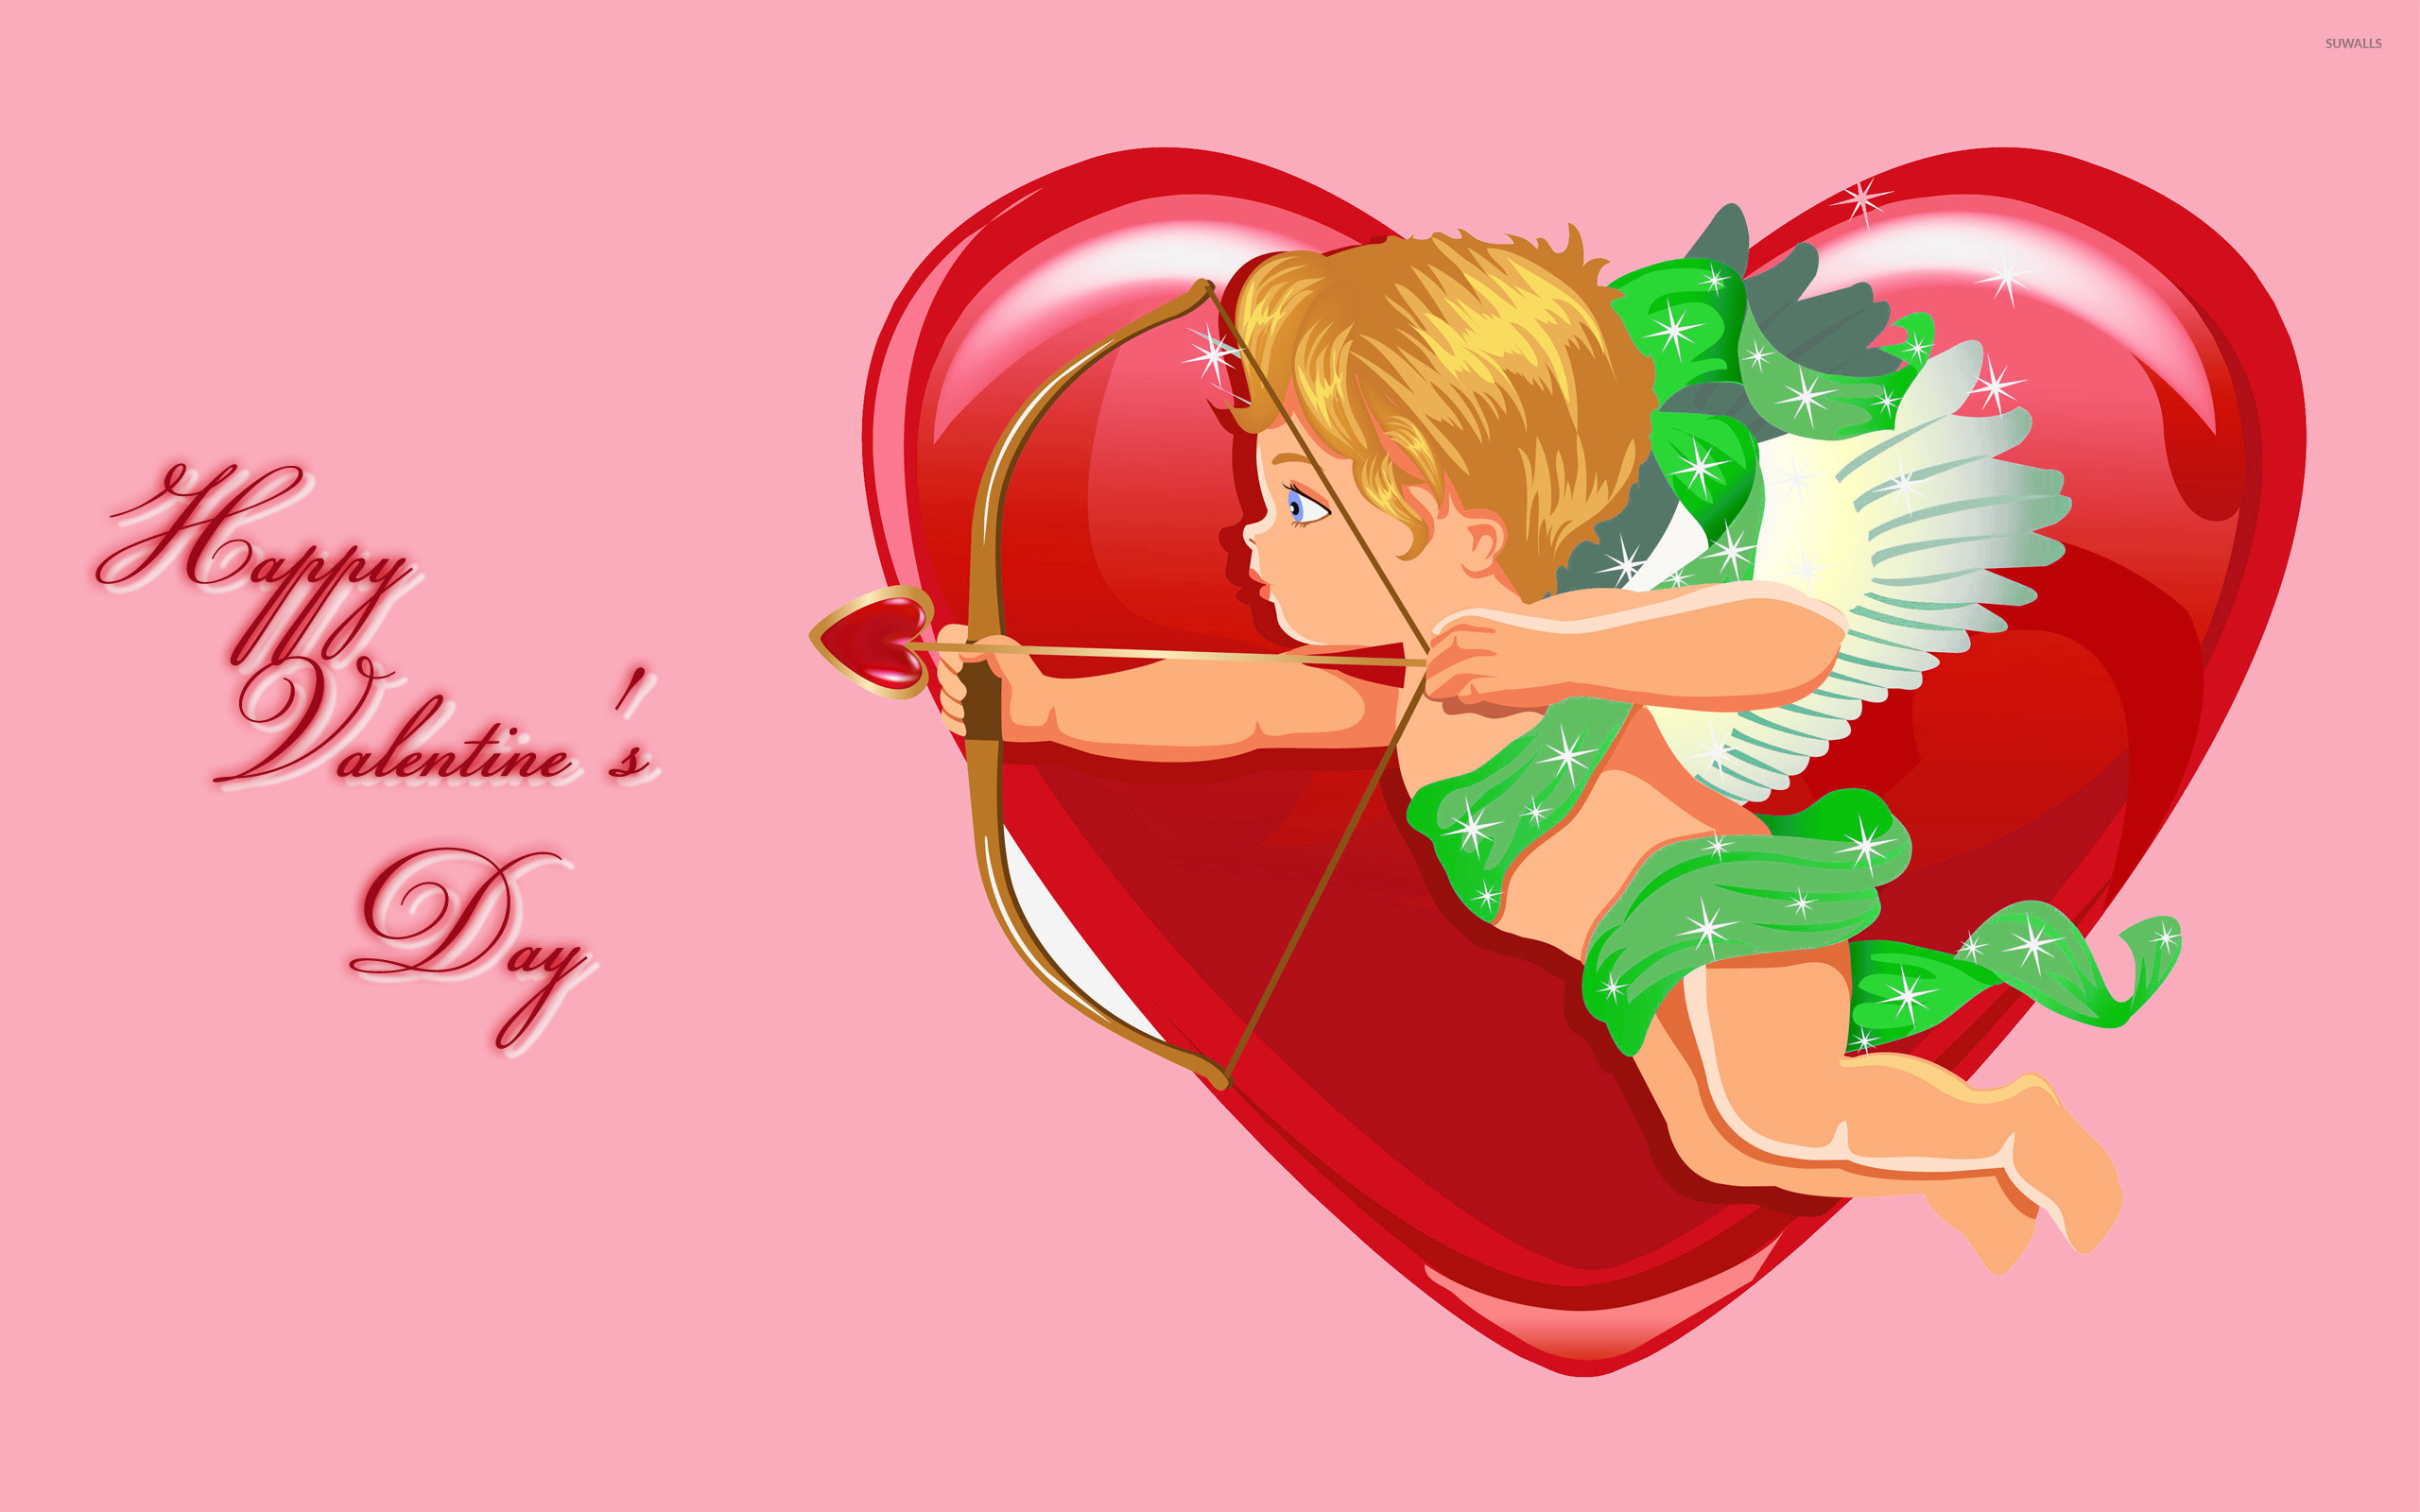 День святого валентина отмечается День святого Валентина (День всех влюбленных)